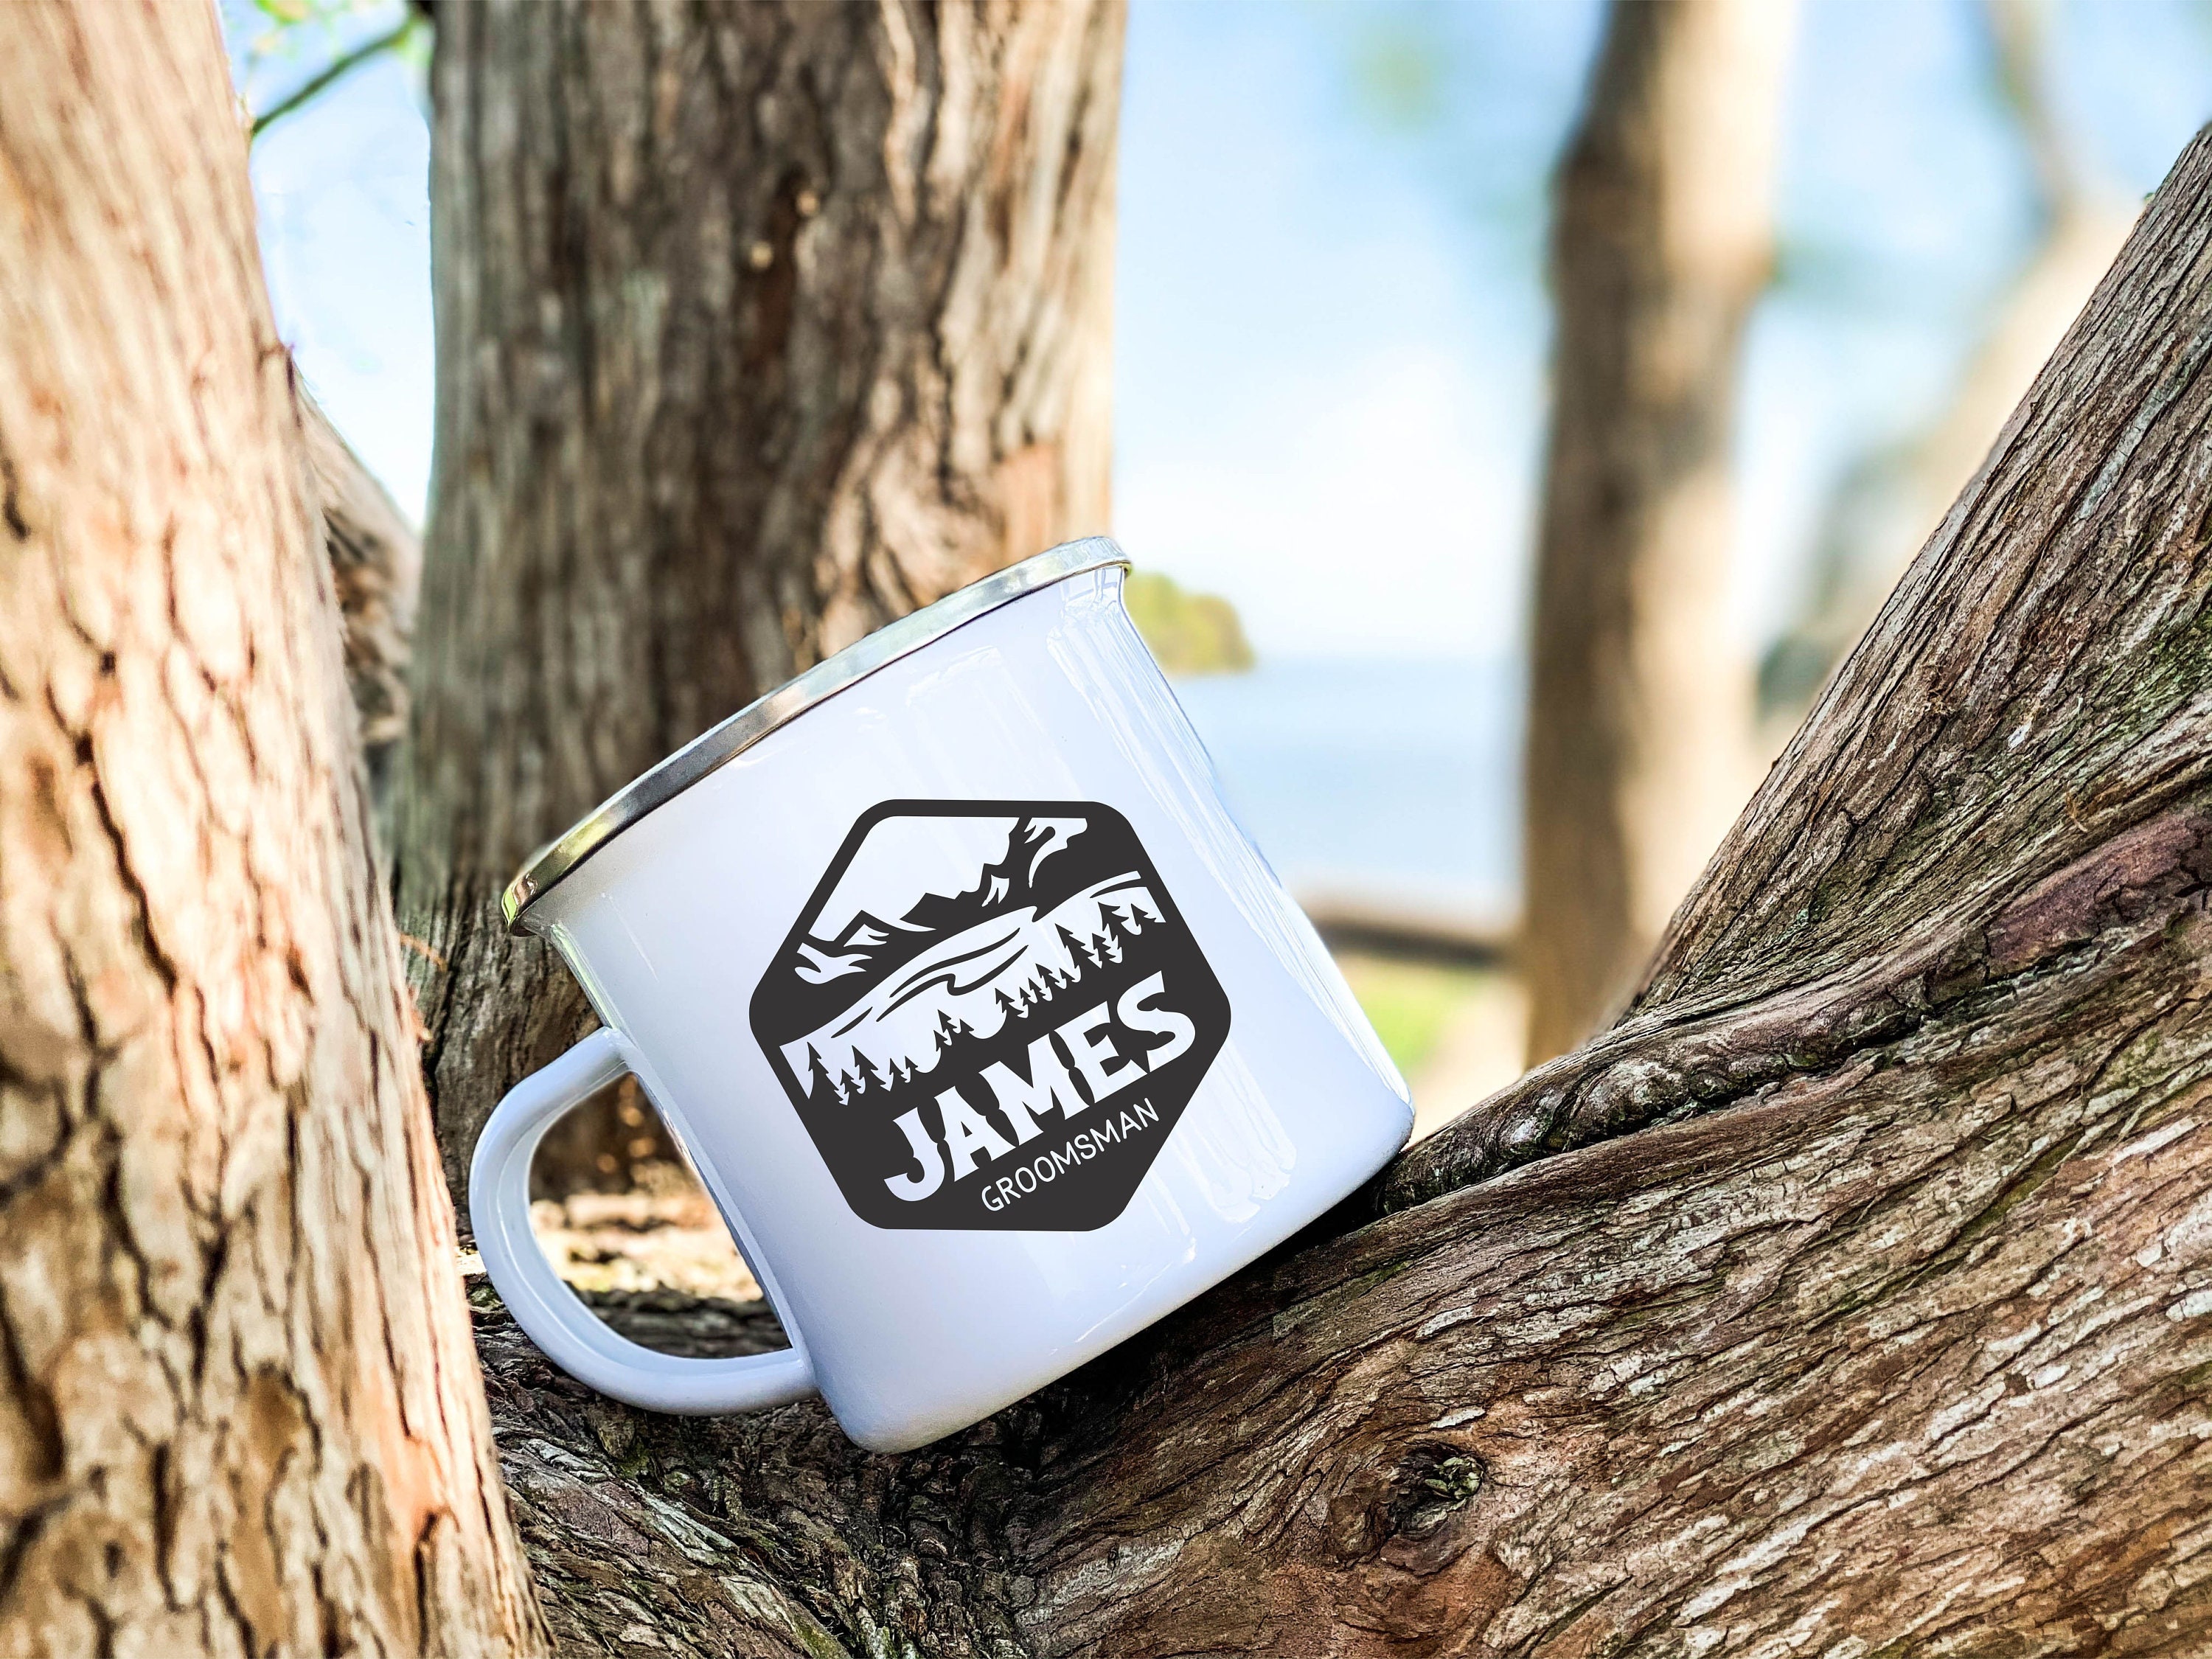 Happy Camping Enamel Cups Coffee Wine Mugs Handle Drinkware